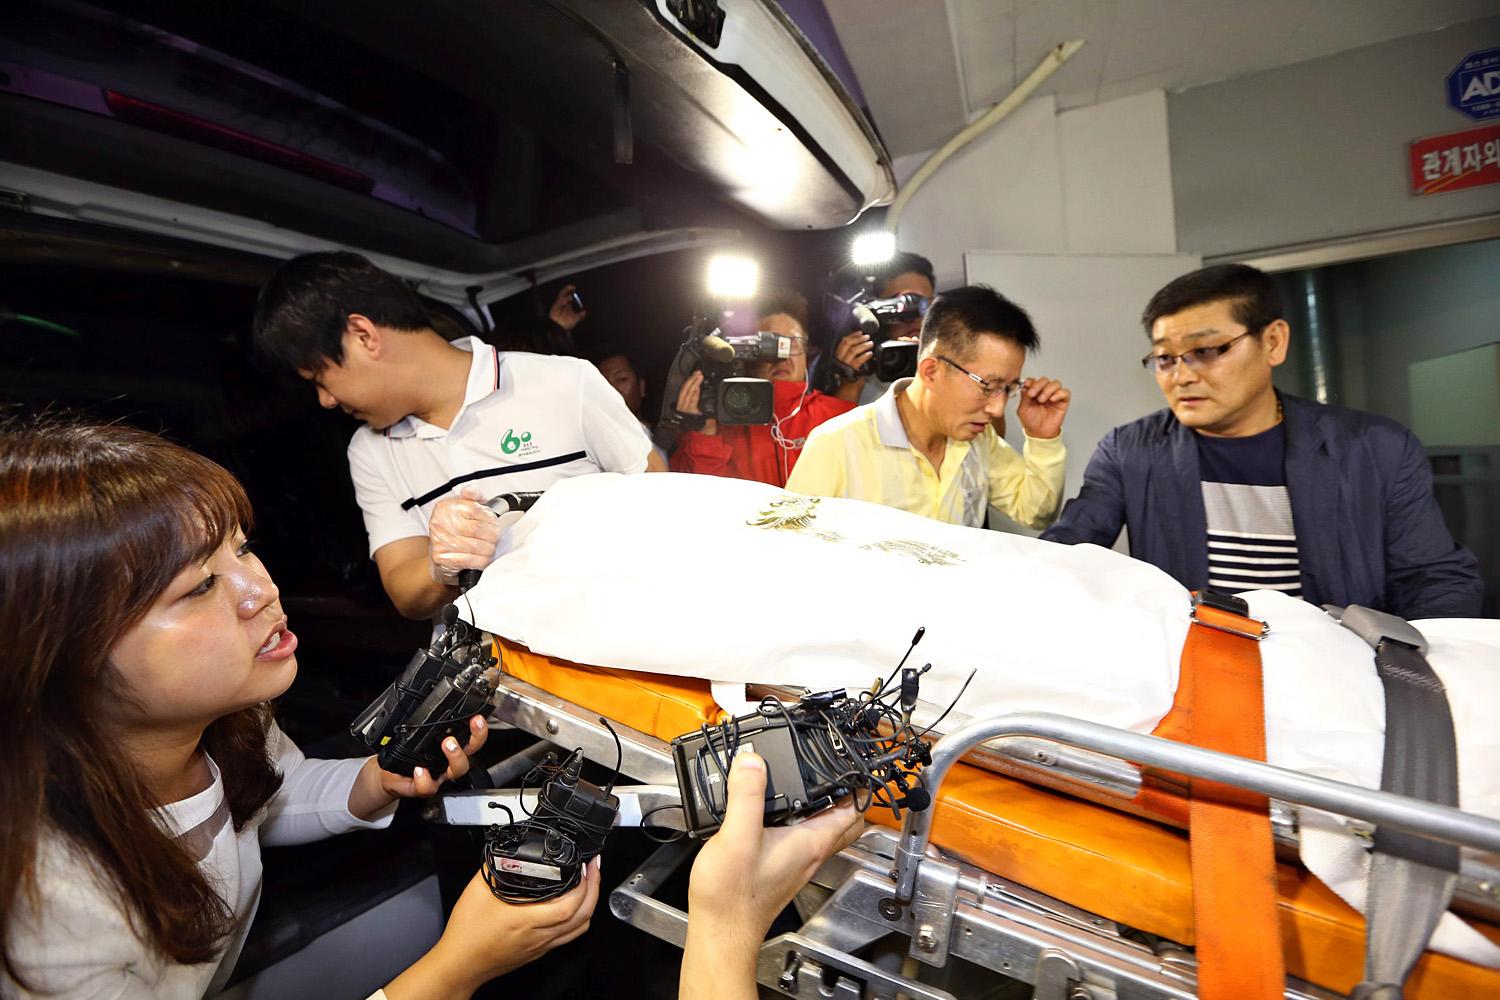 A héten szállították az országos halottkémi hivatalba Ju Bjung Un holttestét, ekkor még volt remény, hogy kiderülnek halálának körülményei.